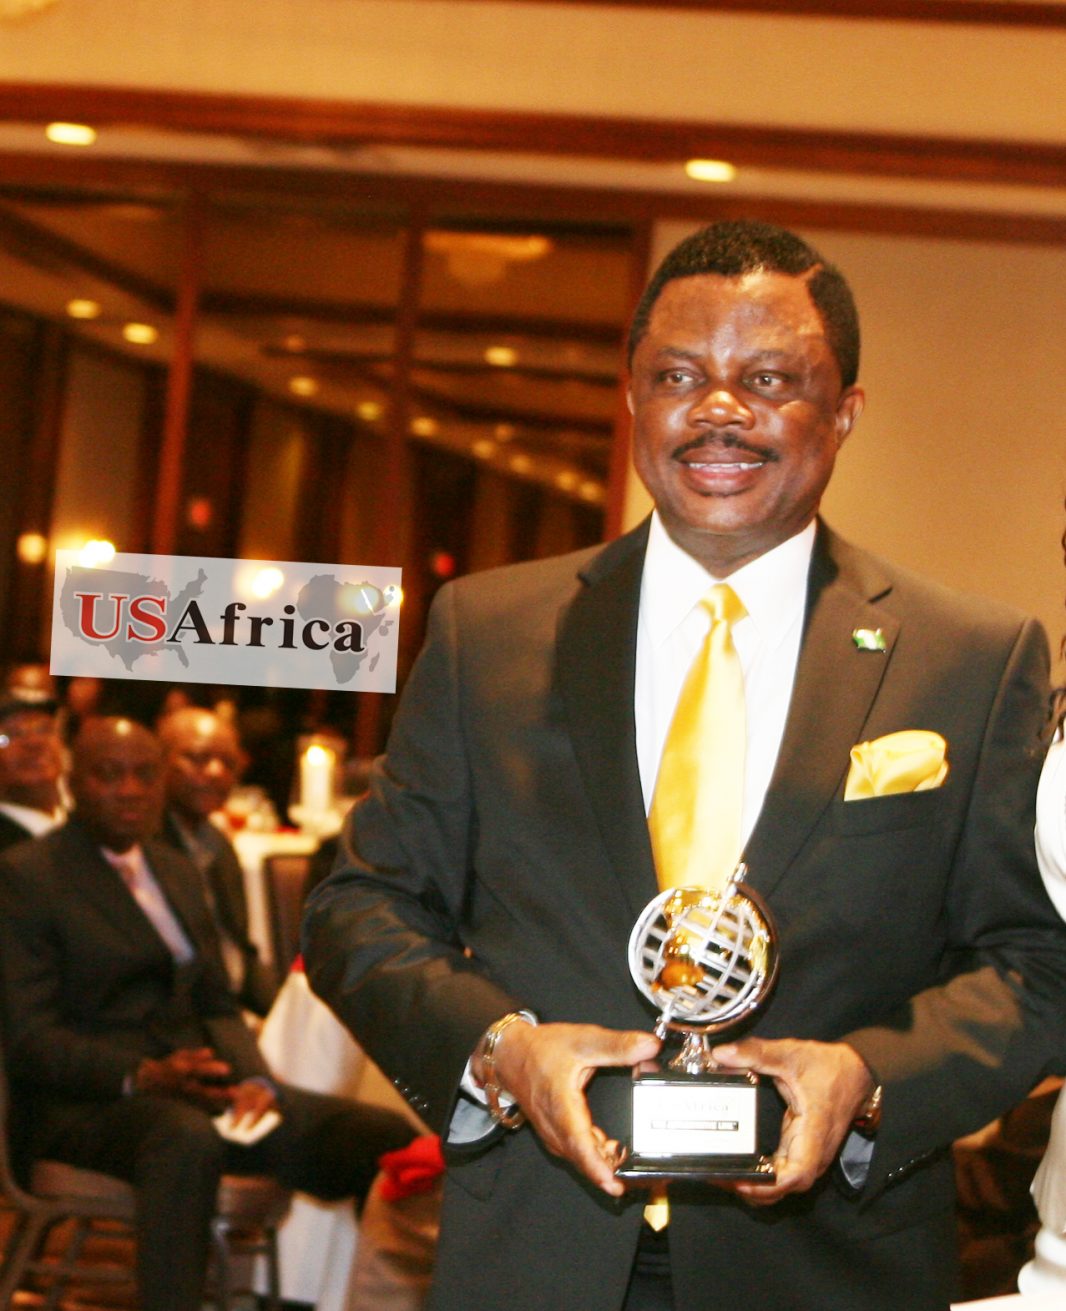 Willie-Obiano-honoree-USAfrica2012_5c